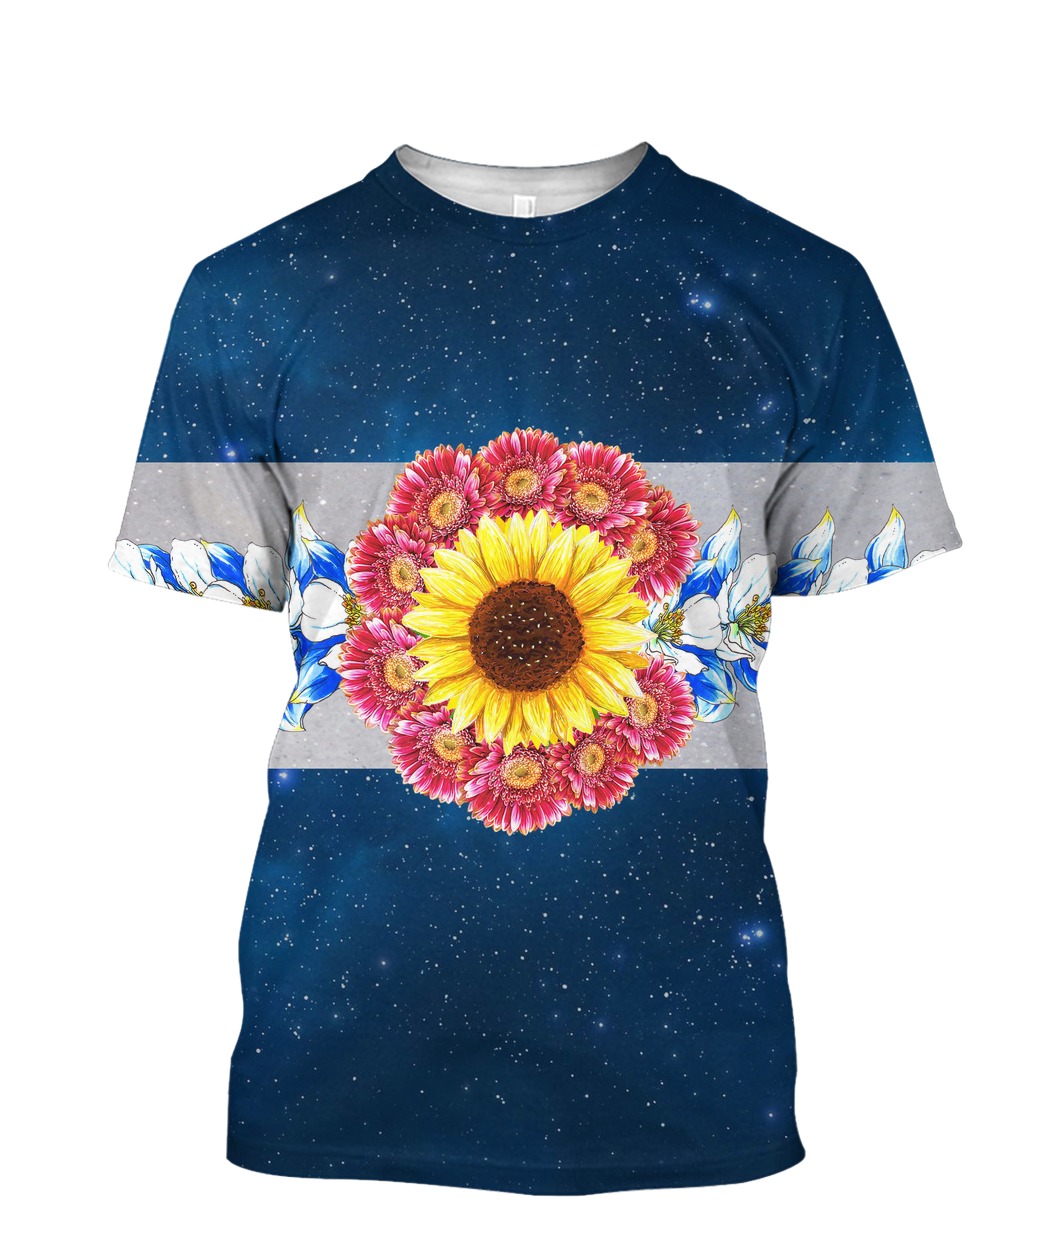 Flower galaxy full printing tshirt